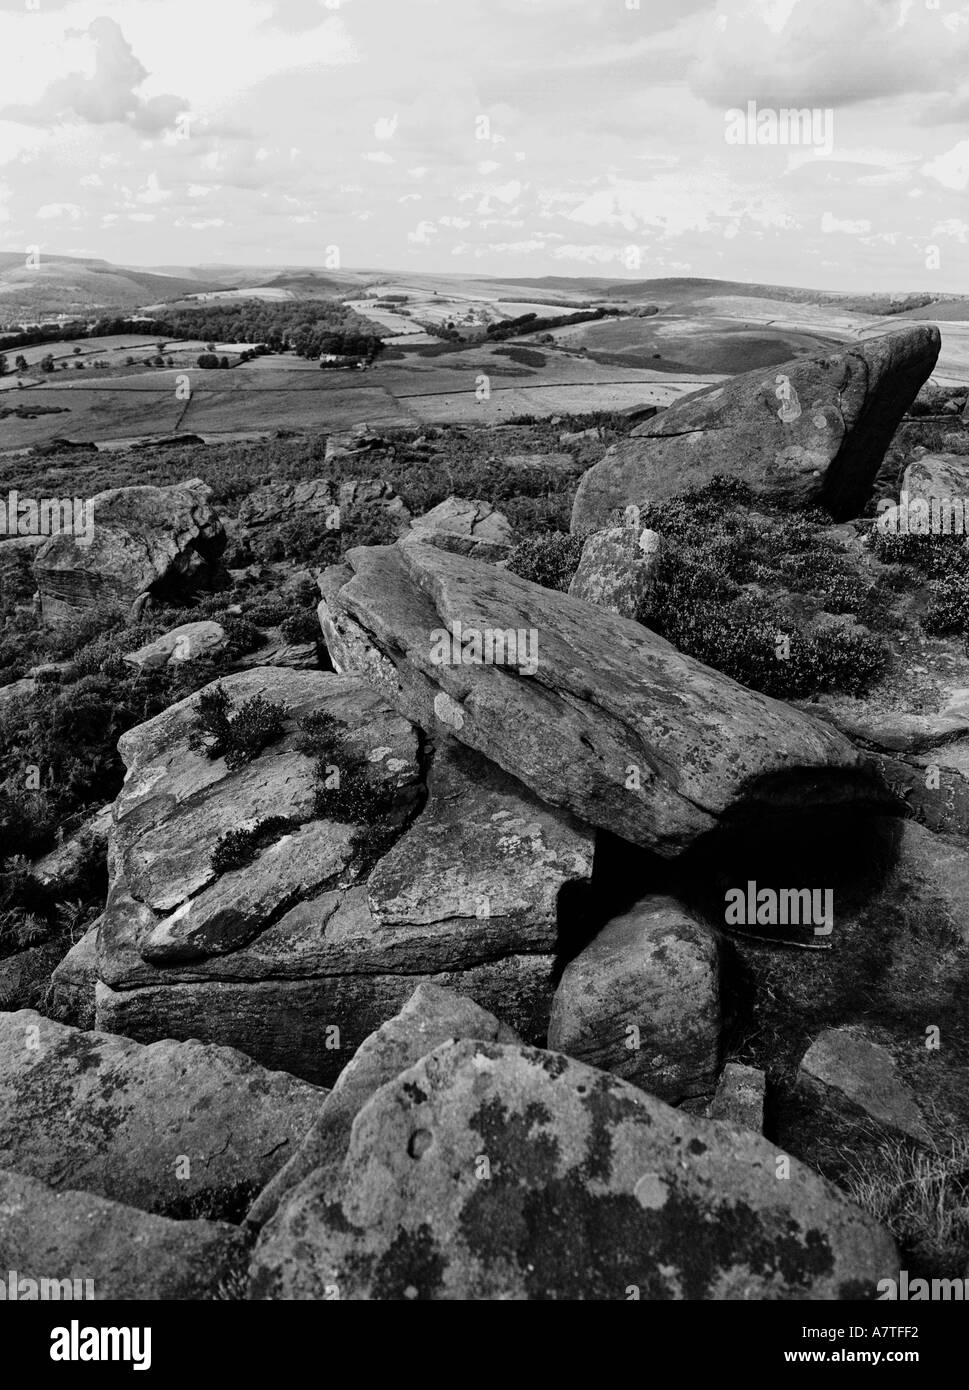 Du monochrome dans le Derbyshire peak district donnant sur les formations rocheuses de grès près de Sheffield Banque D'Images